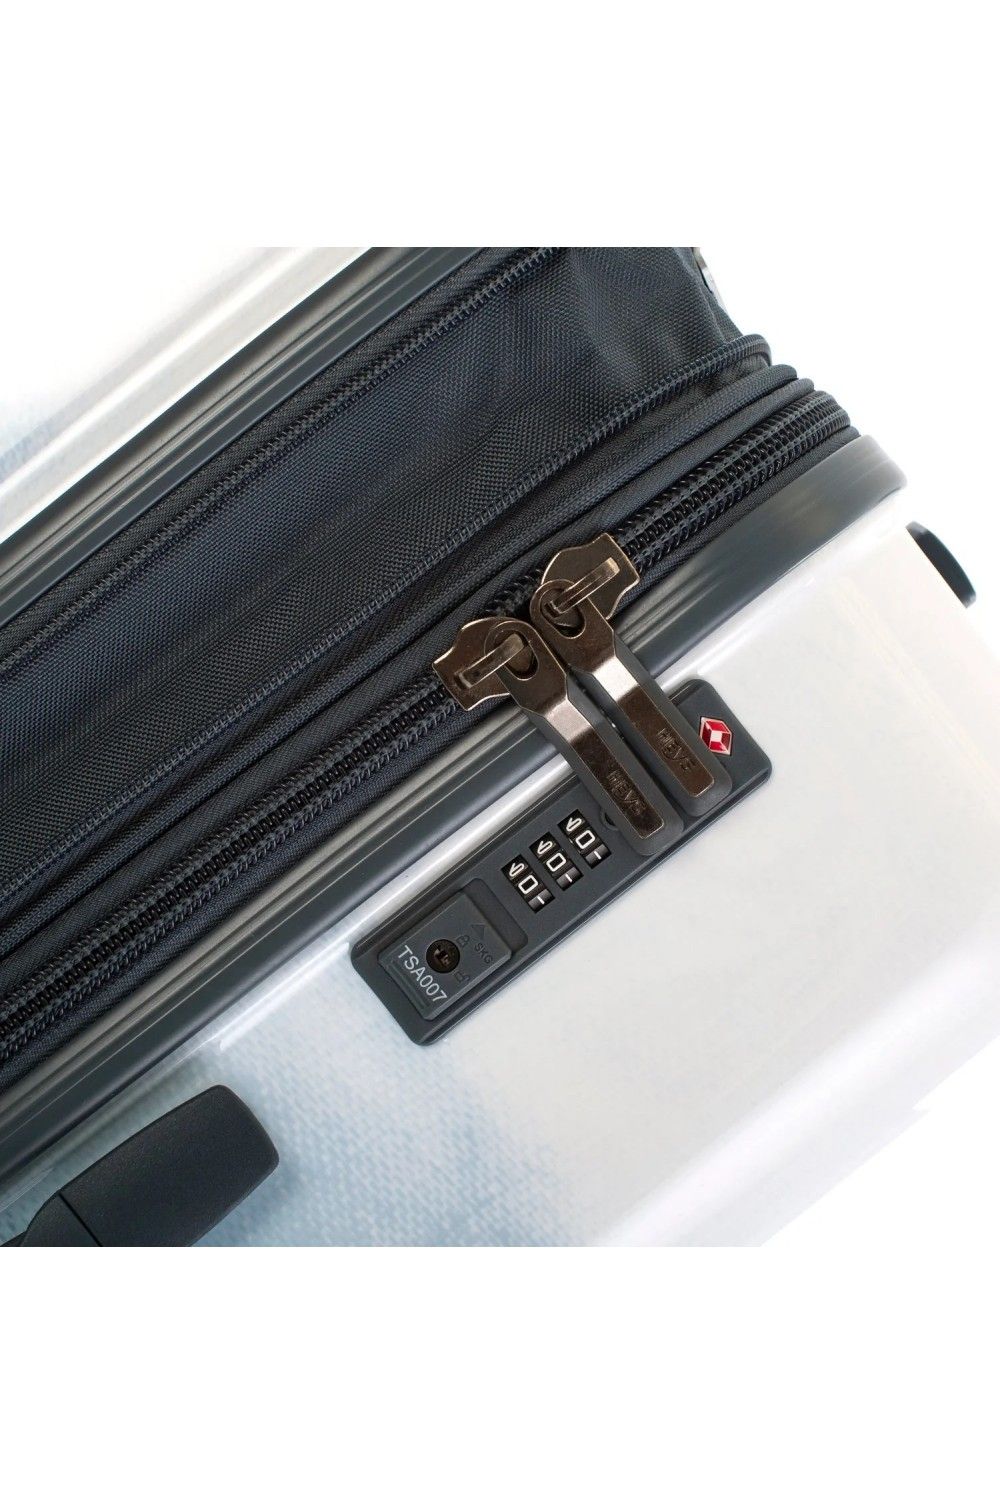 Koffer Handgepäck Heys BLUE Fashion 4 Rad 55cm erweiterbar